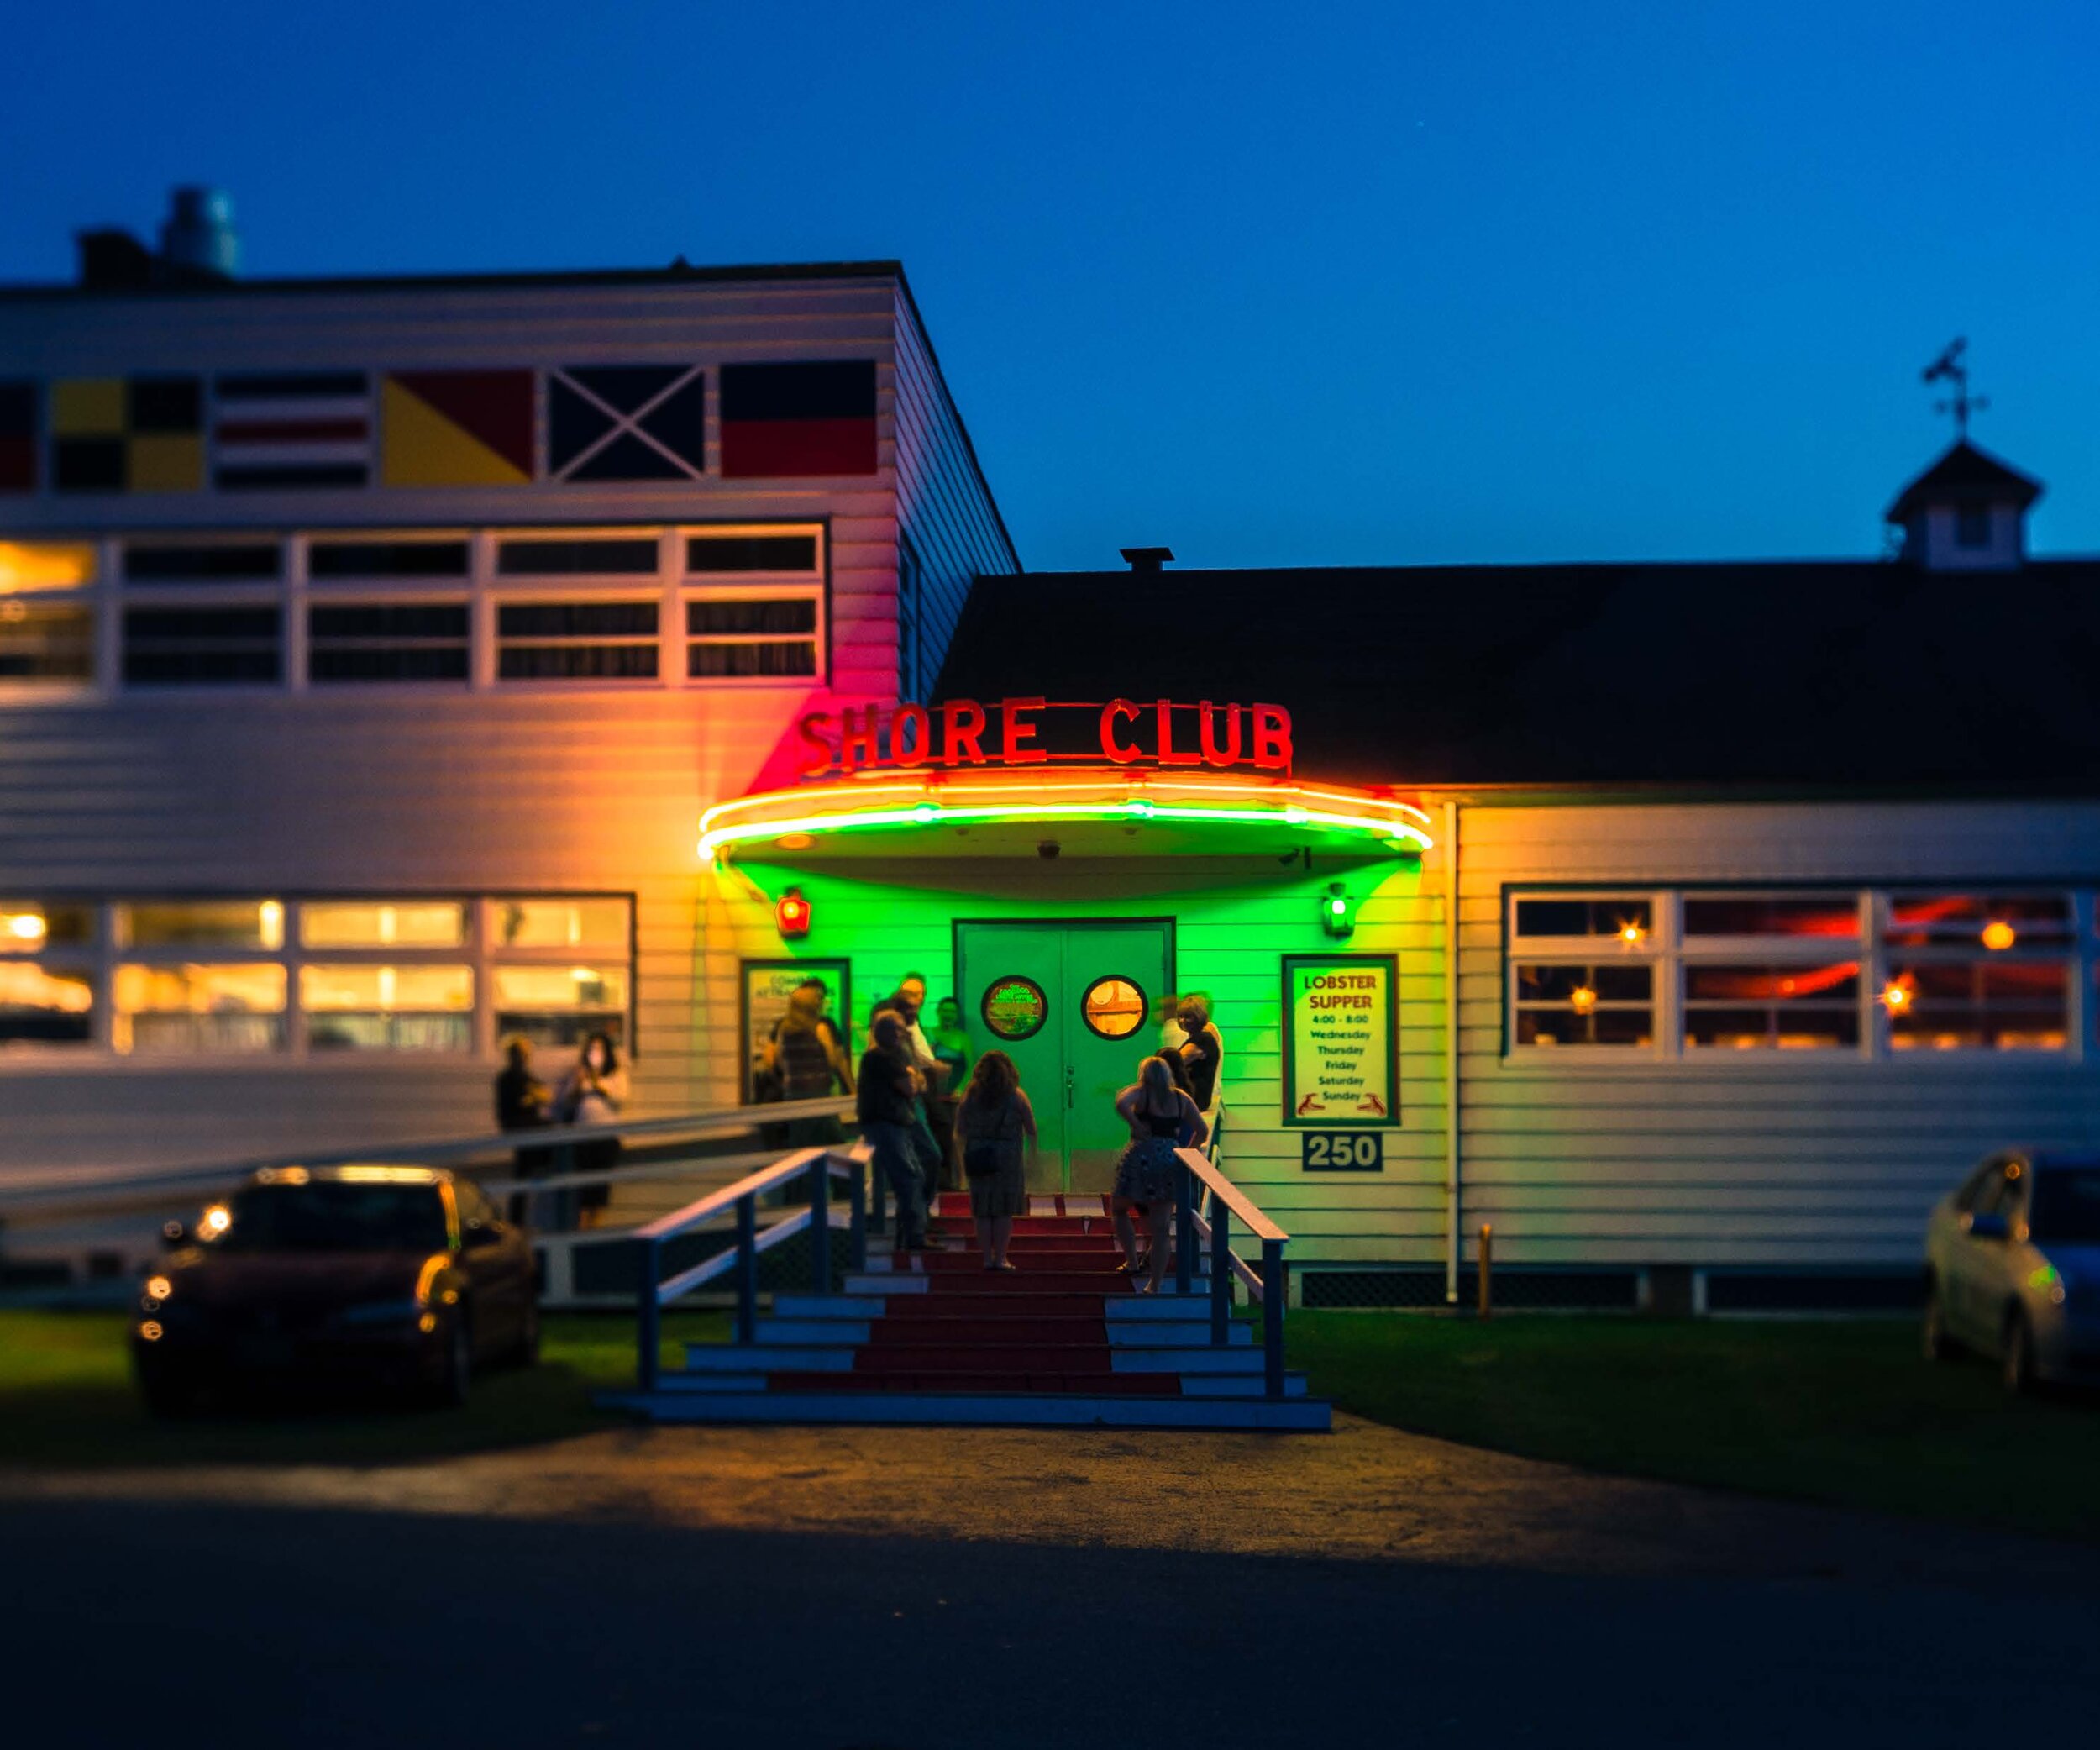 The Shore Club *